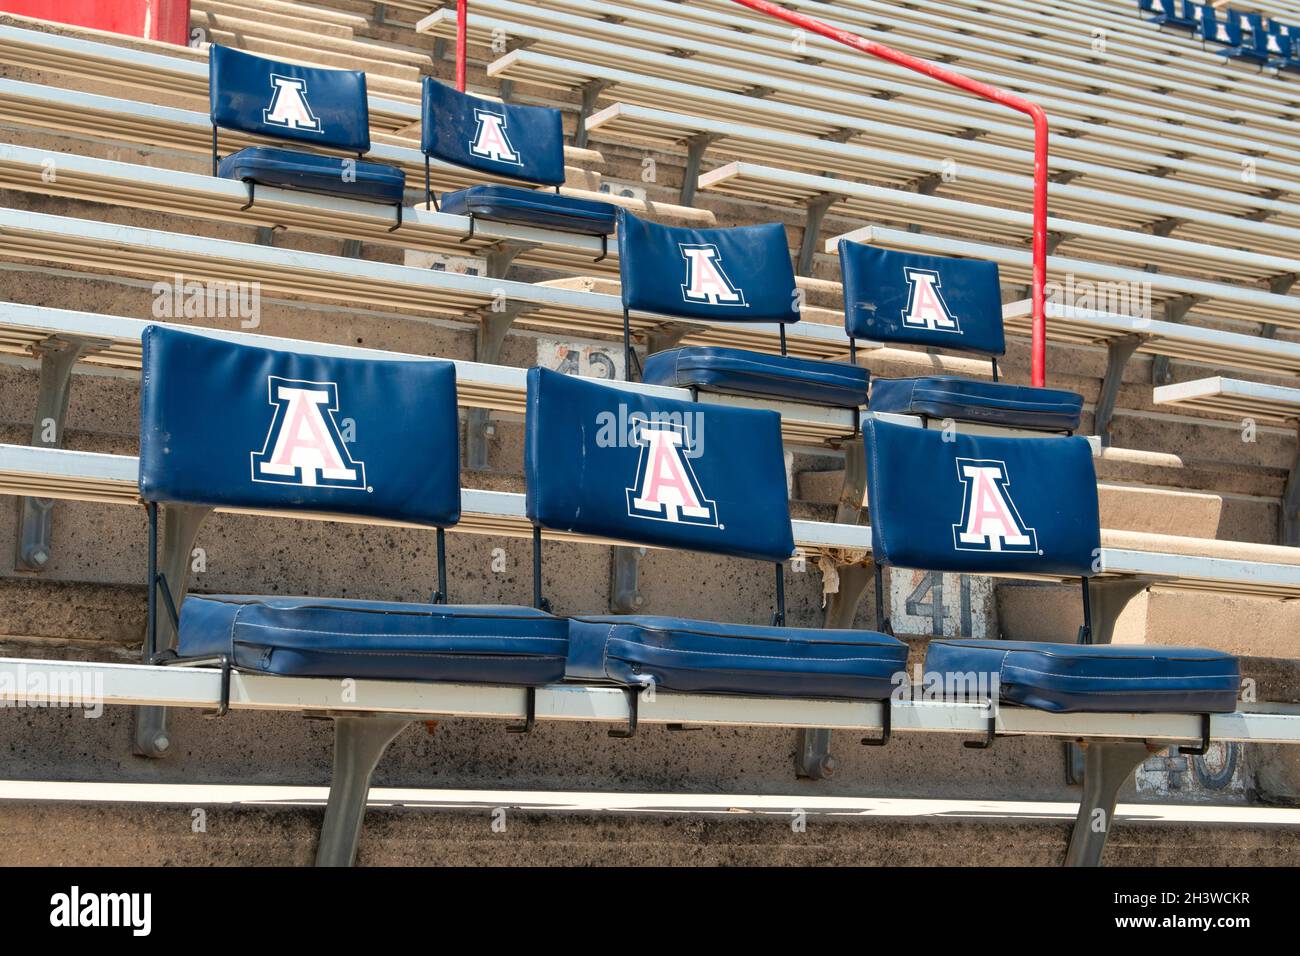 Das Fußballstadion der University of Arizona auf dem UA Campus in Tucson, Arizona Stockfoto